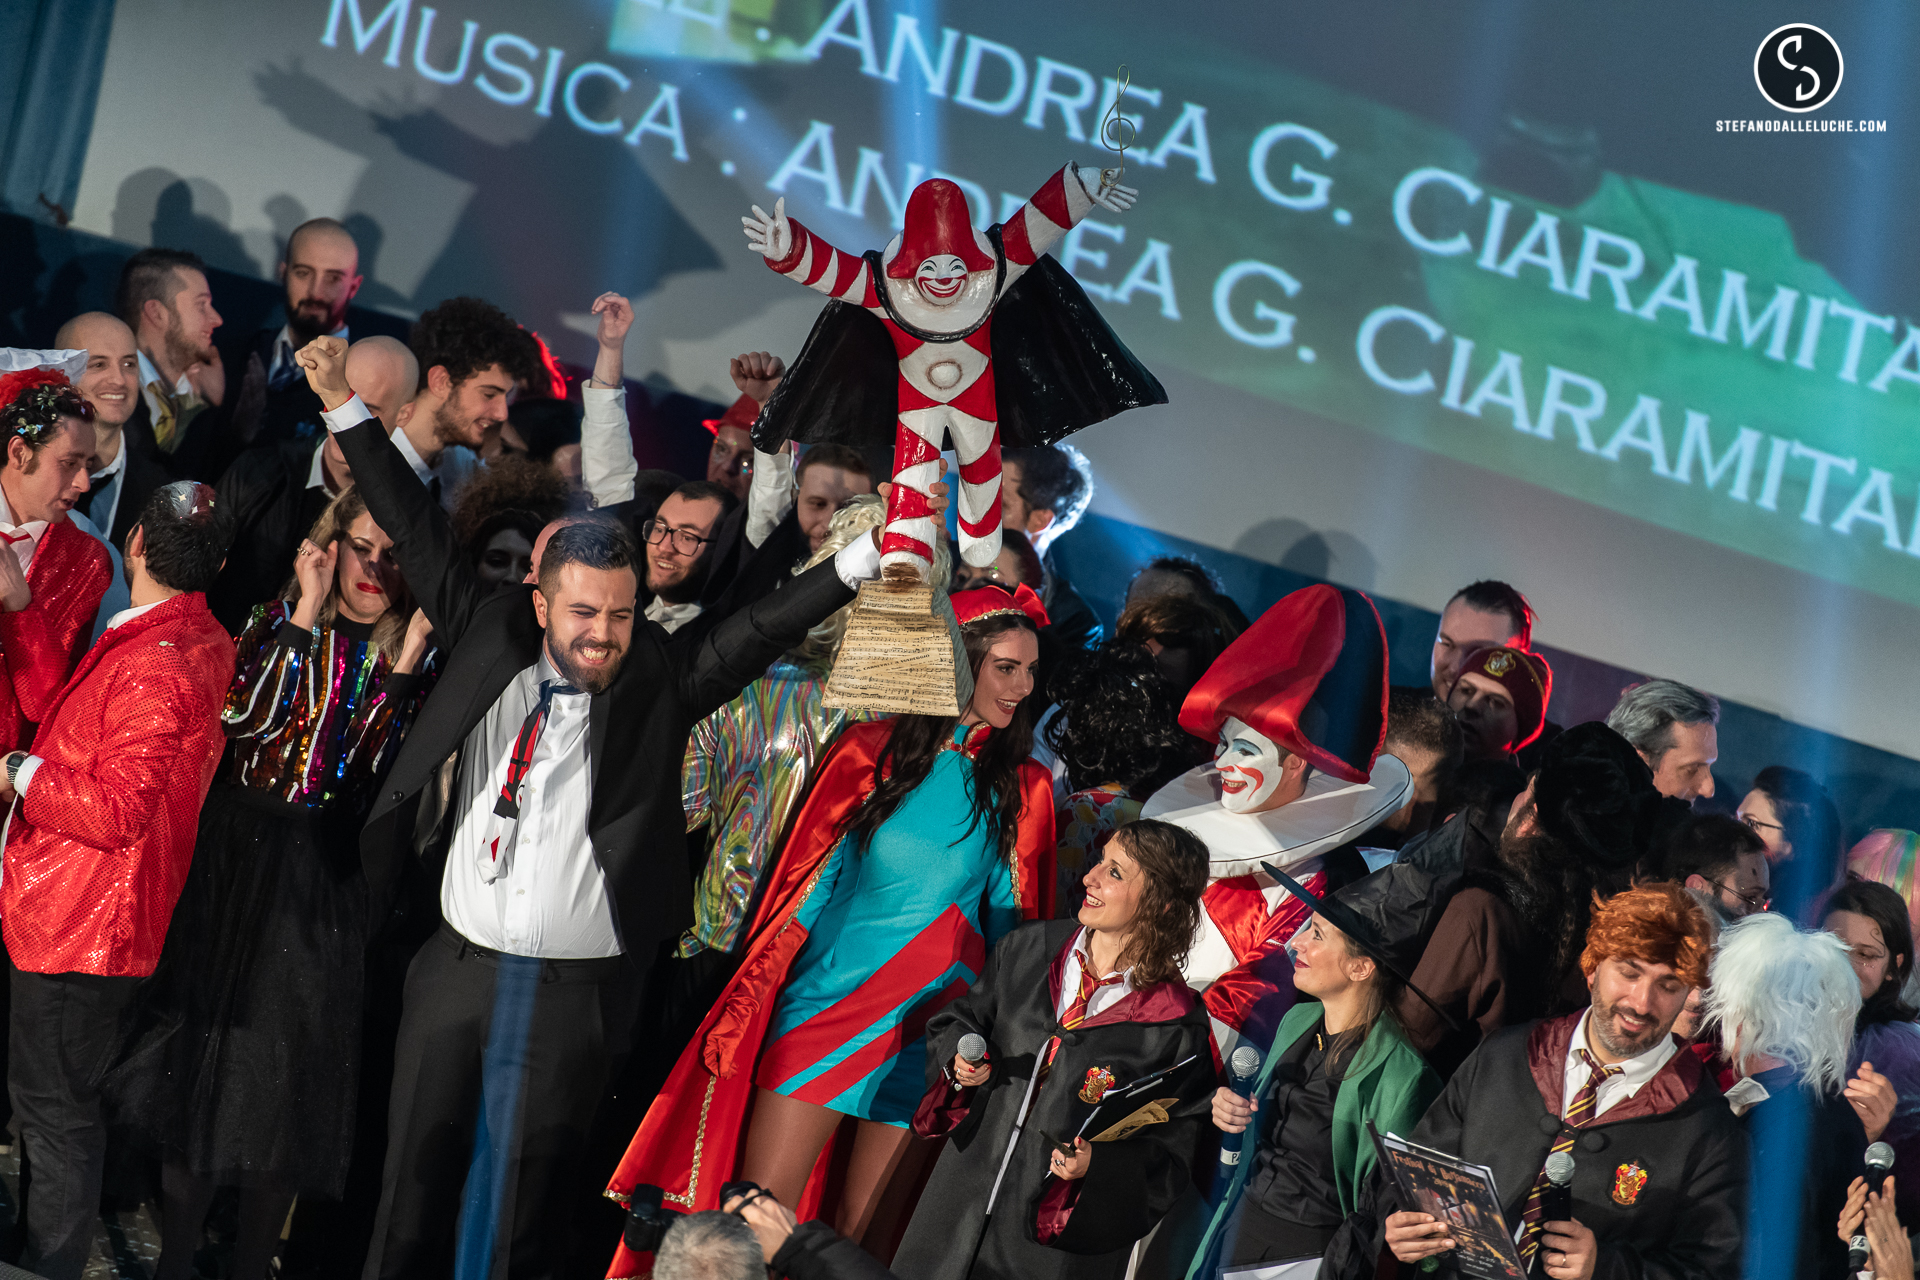 “Un tuffo tra i coriandoli” vince il Festival di Burlamacco: sarà la canzone ufficiale del Carnevale di Viareggio 2019